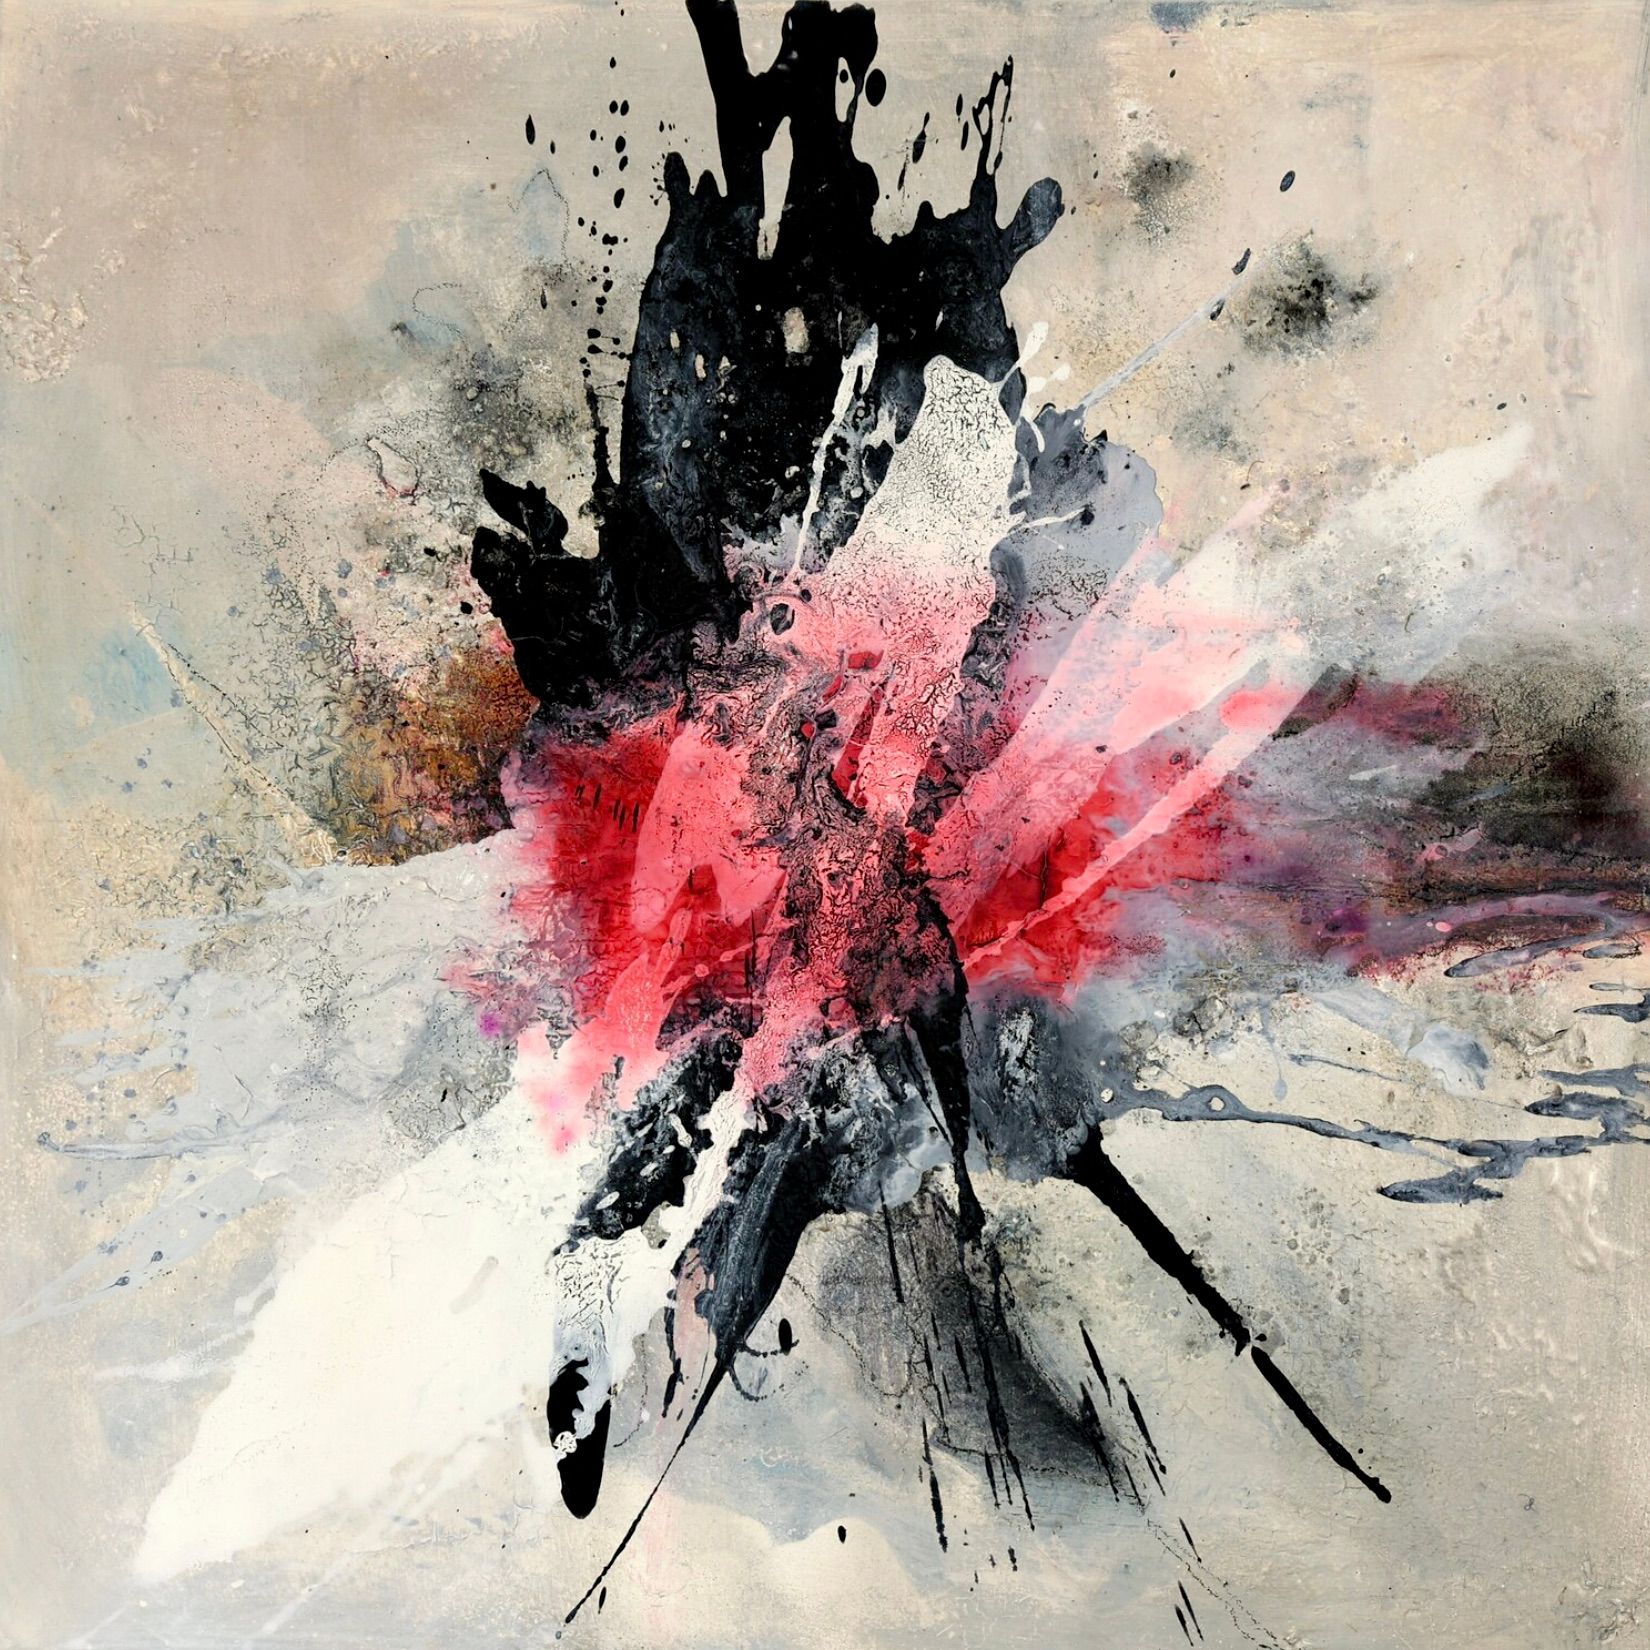 Nel dipinto espressionista, astratto e colorato "Explosively 1" di Christa Haack, i colori apparentemente esplosivi del rosso, del ping, del nero e del bianco dominano su uno sfondo grigio-alt-rosa.